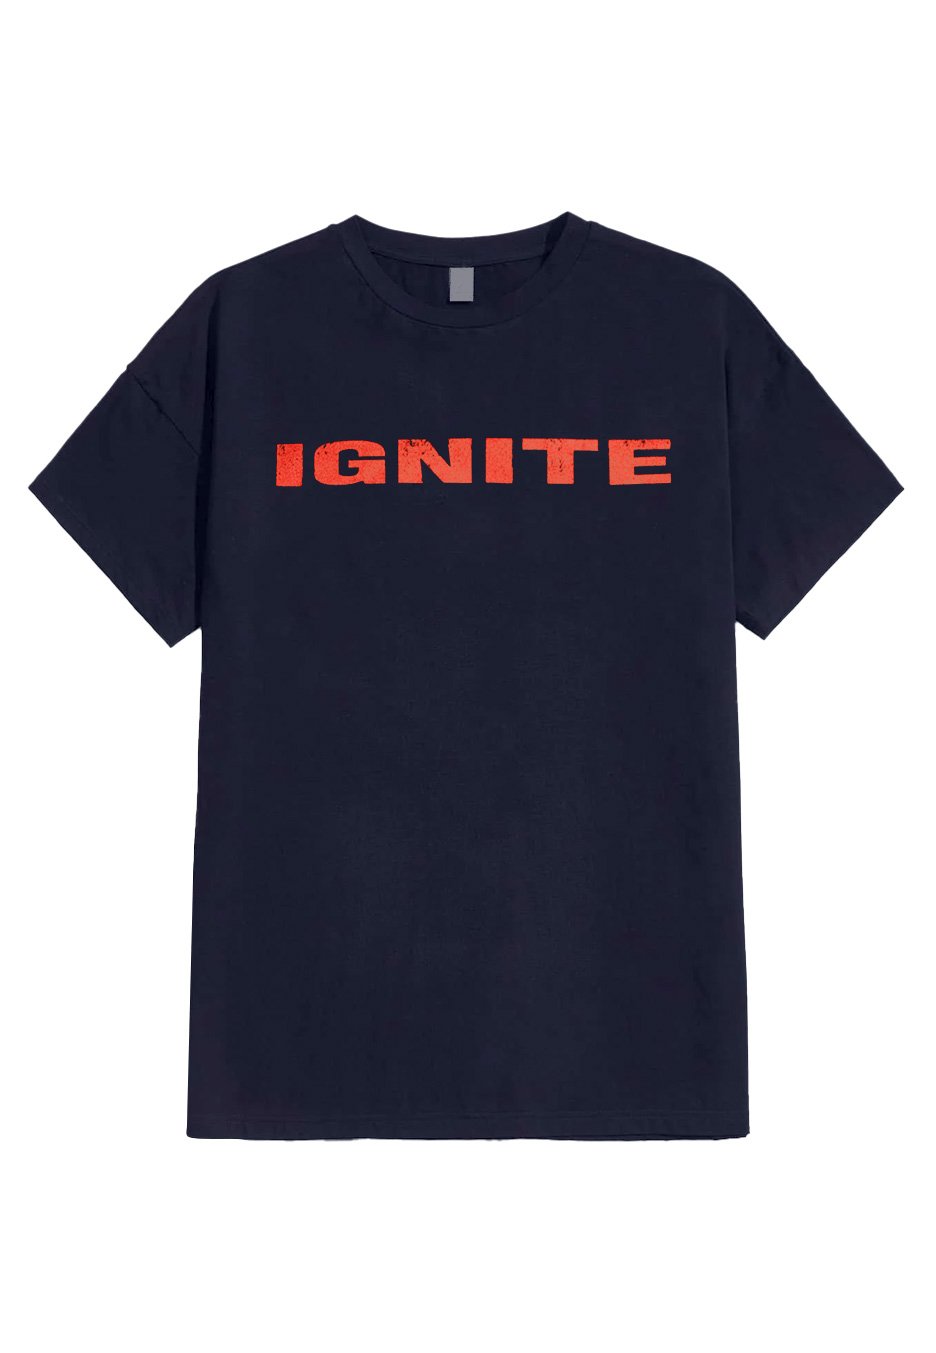 Ignite - OG Navy - T-Shirt